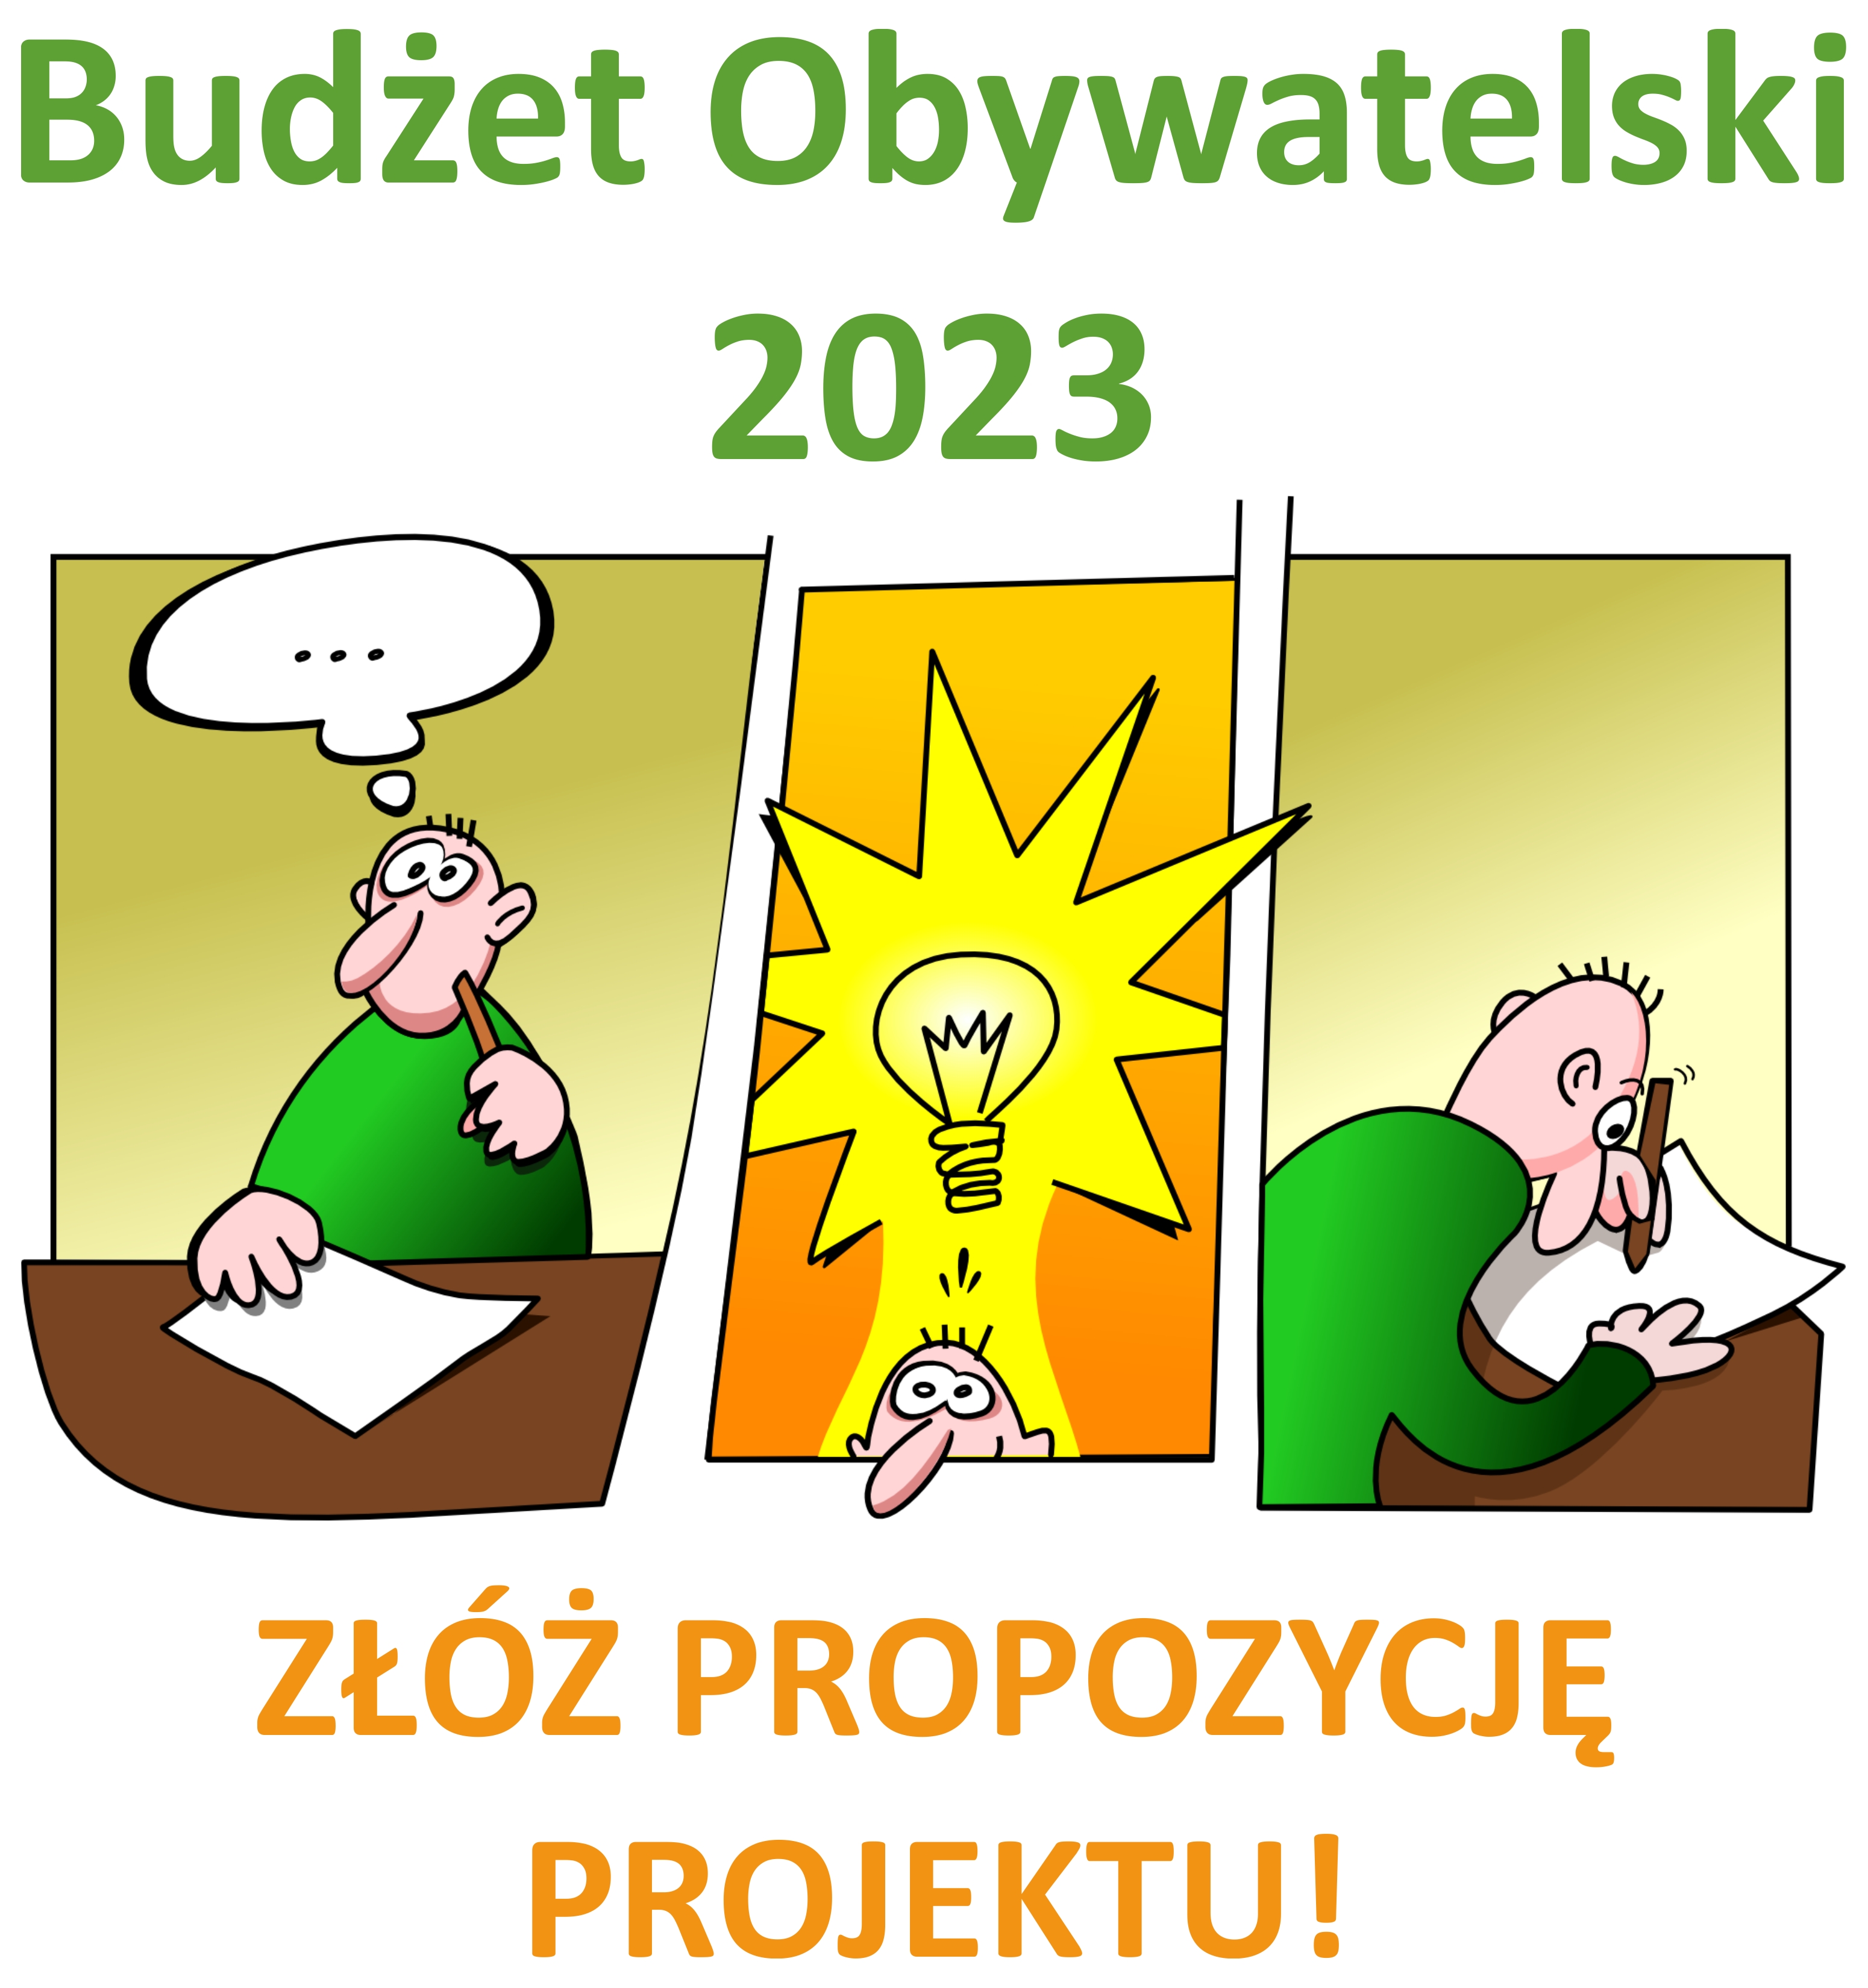 Składanie projektów do Budżetu Obywatelskiego 23